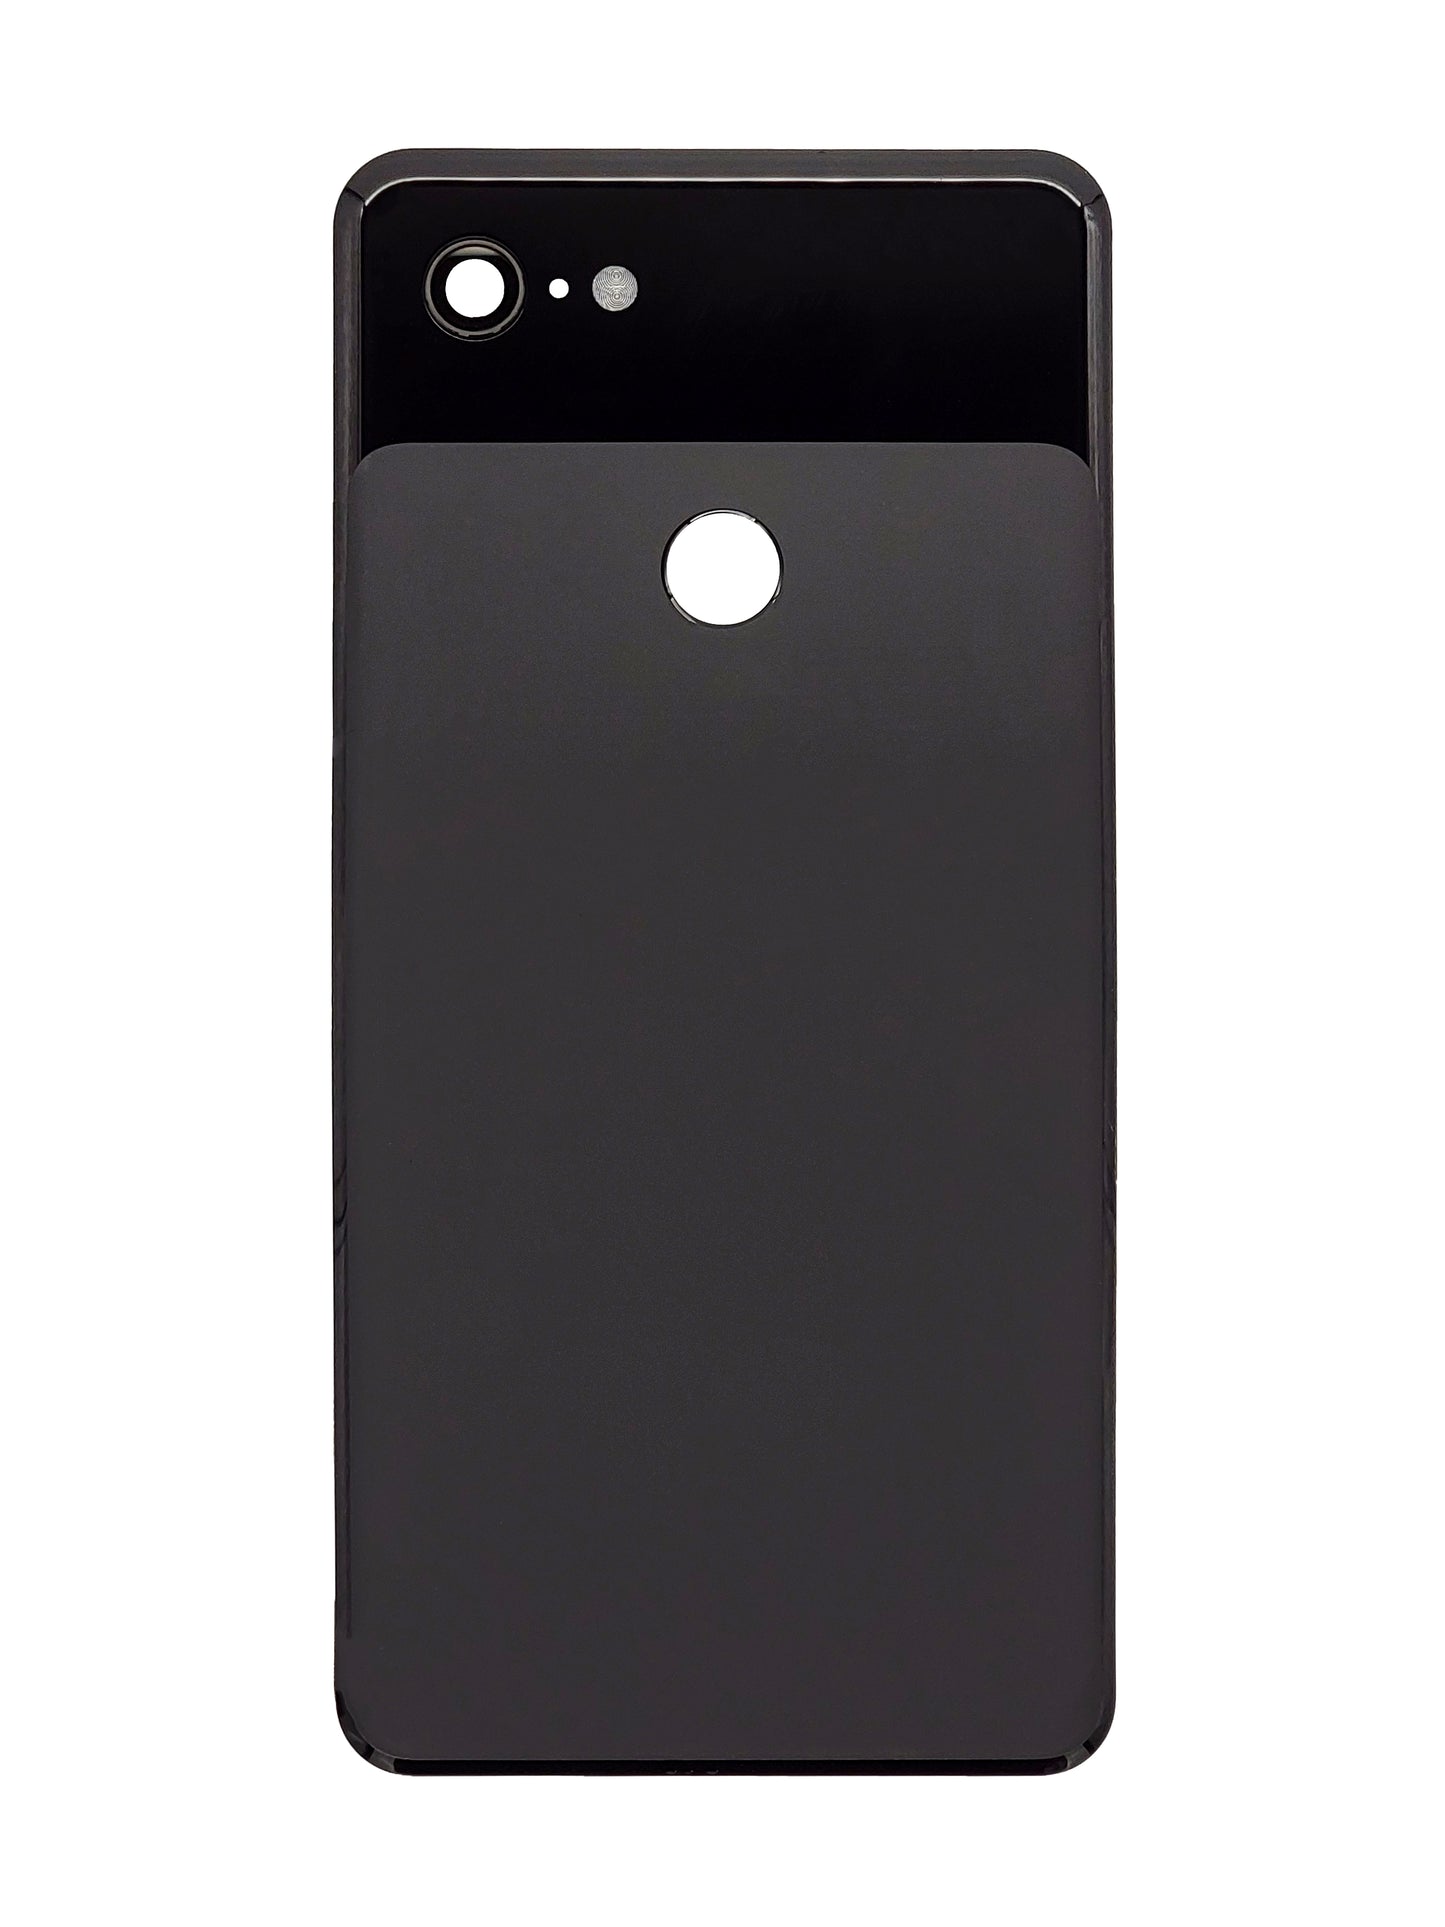 GOP Pixel 3 XL Back Cover (Black)